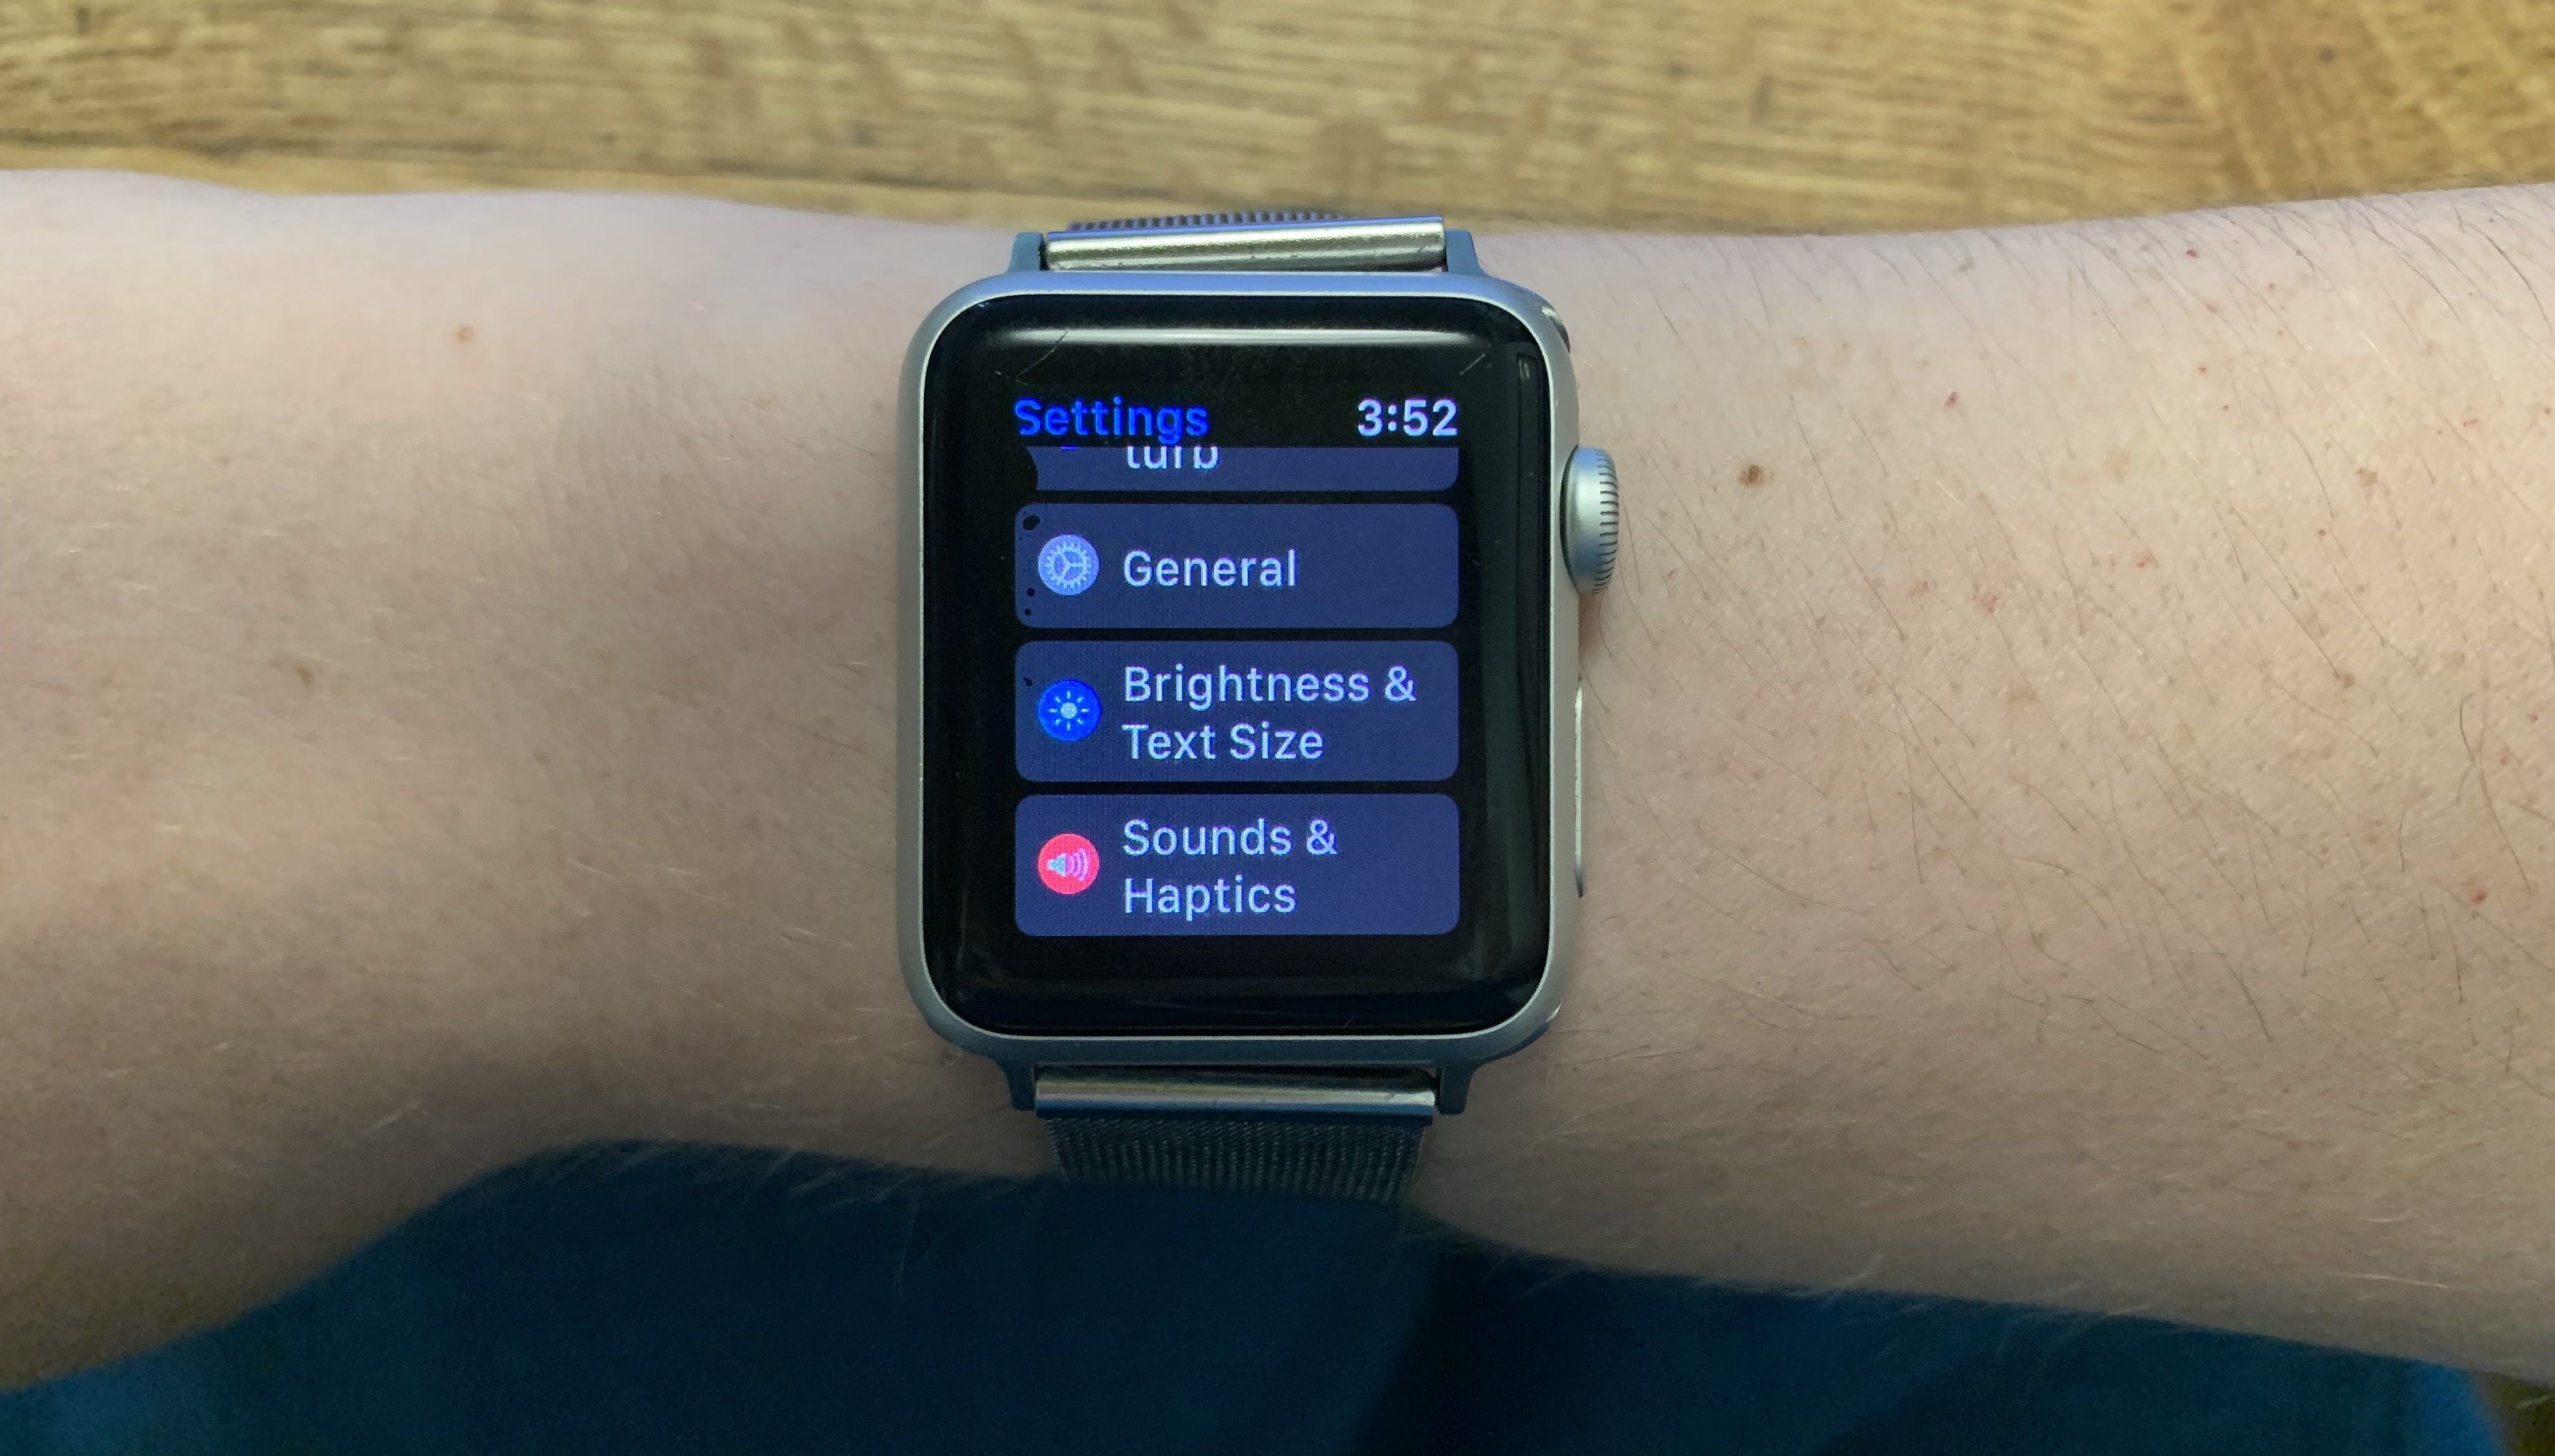 Apple Watch Settings e1625572372325 - Come aggiornare il tuo Apple Watch